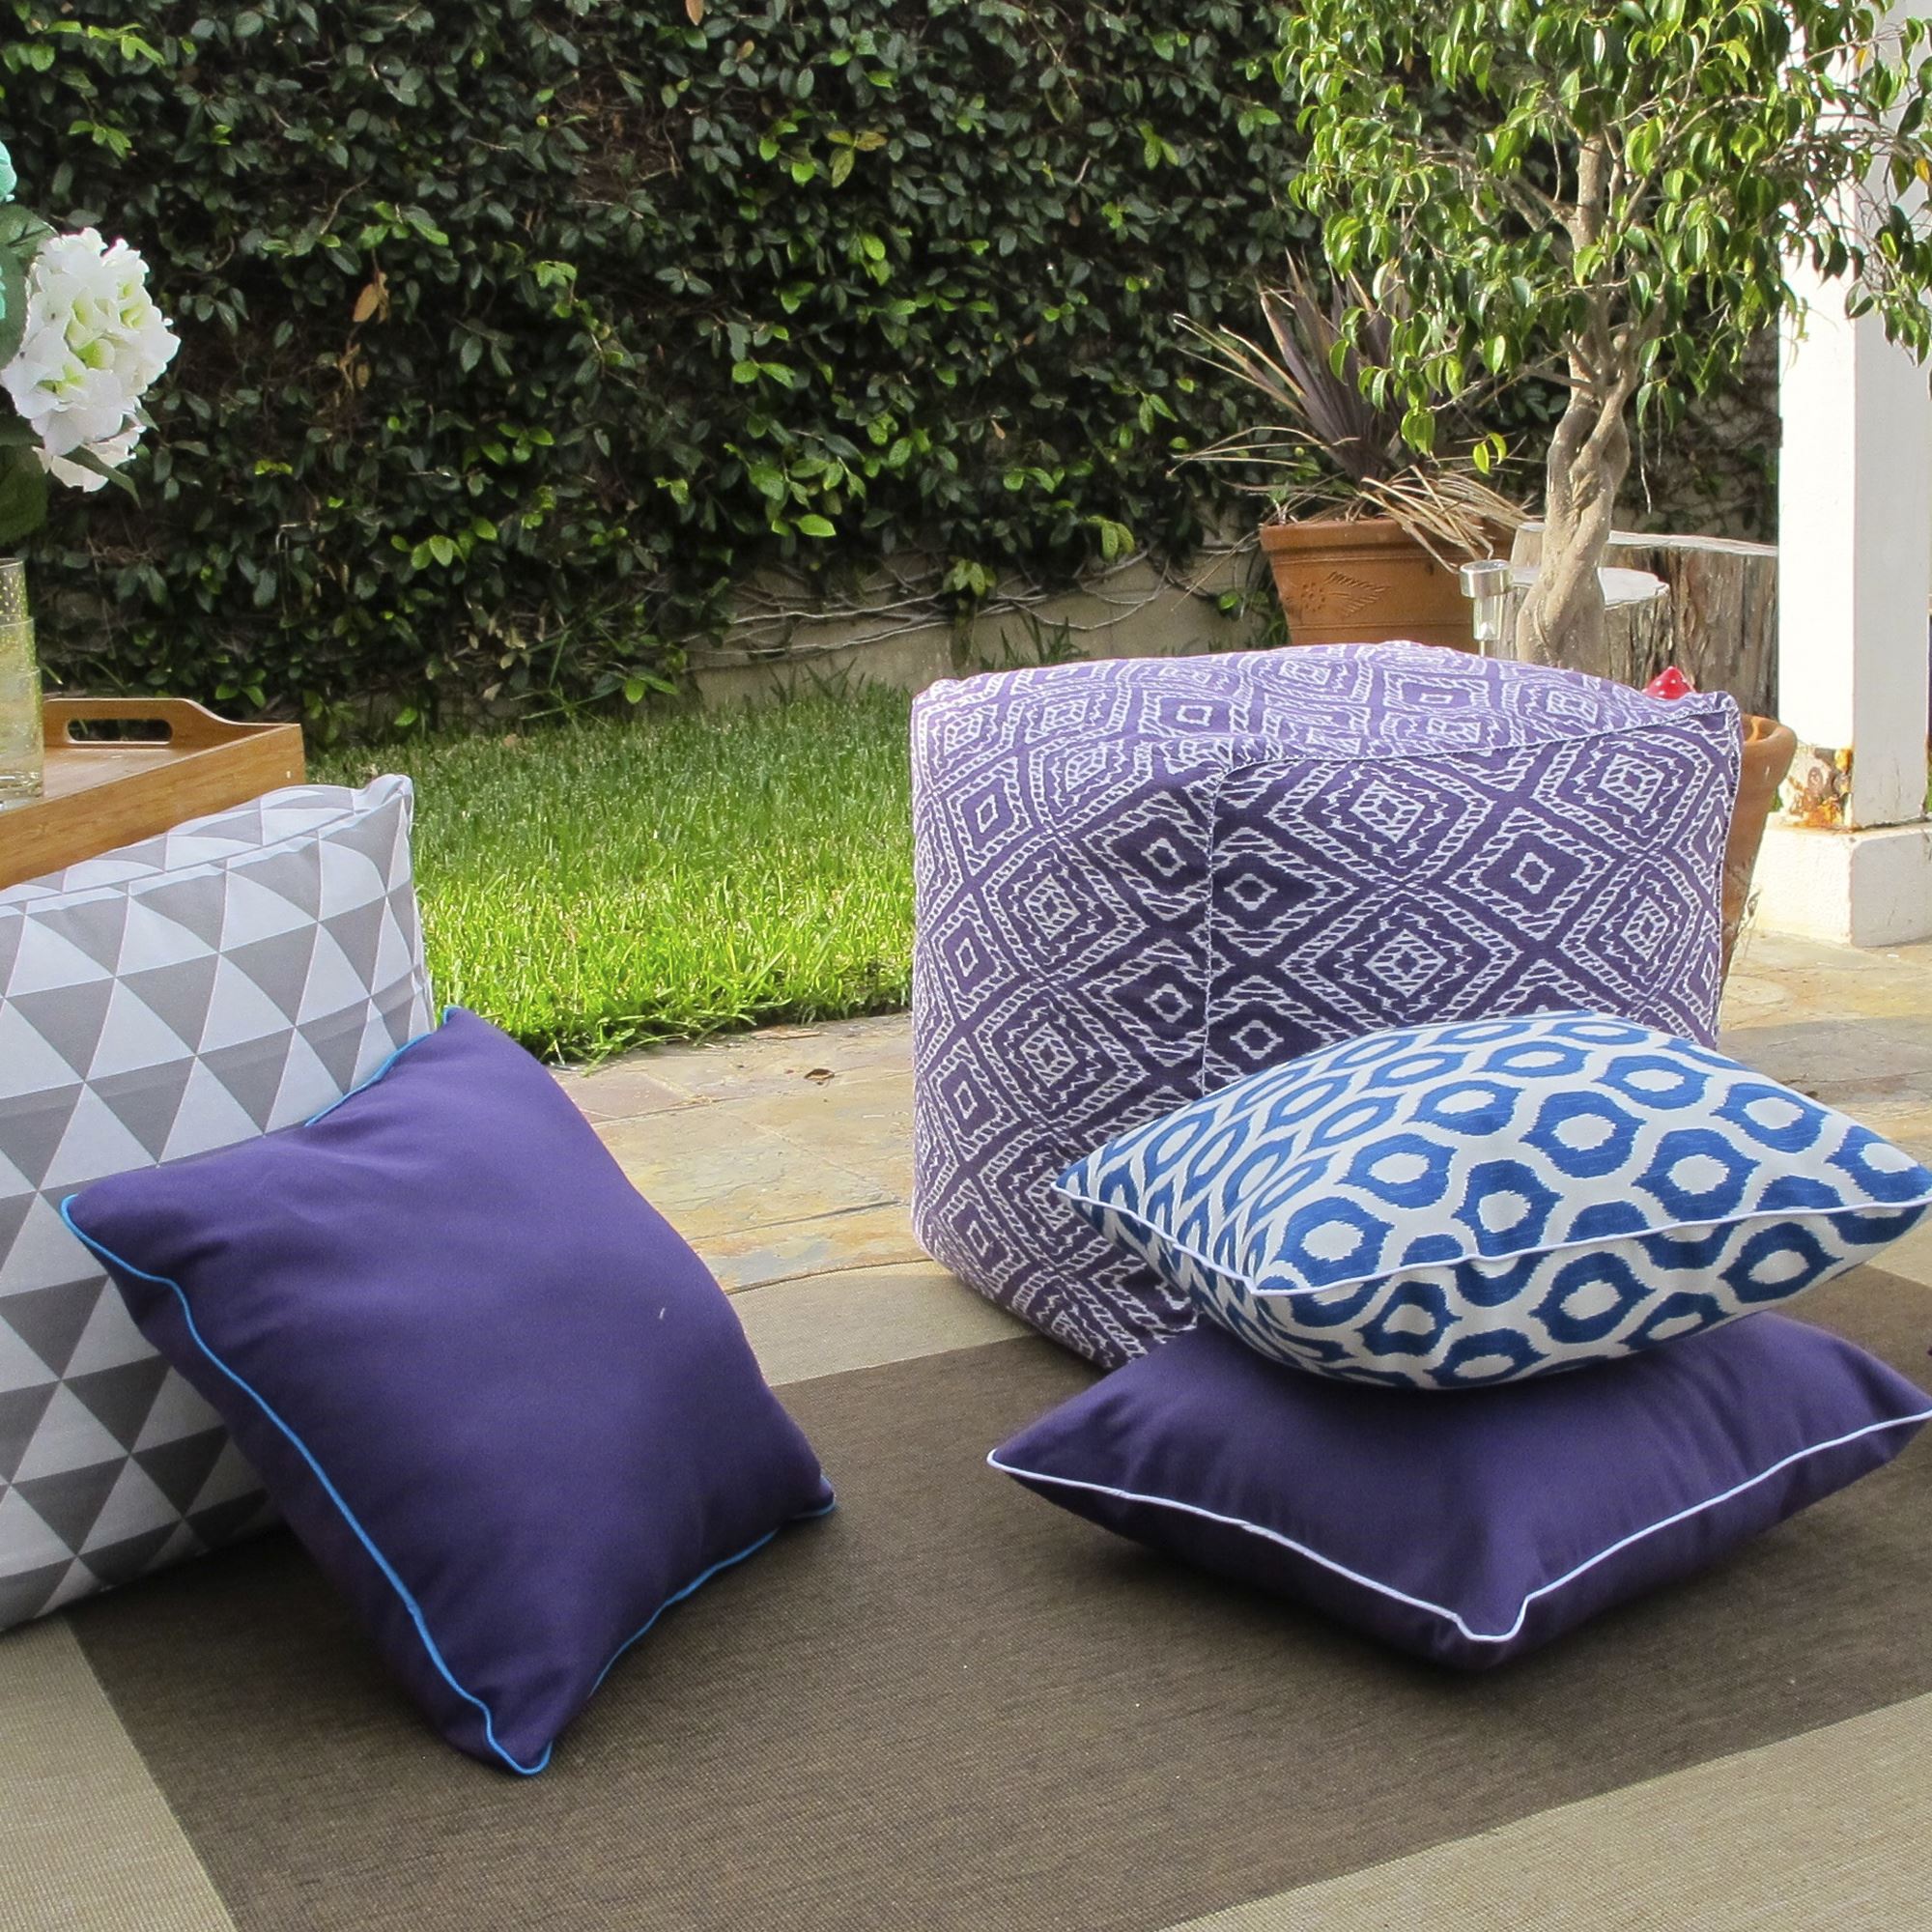 Садовые подушки купить. Подушки для дачной мебели. Подушки на плетеную мебель. Диванные подушки для садовой мебели. Красивые подушки для садовой мебели.